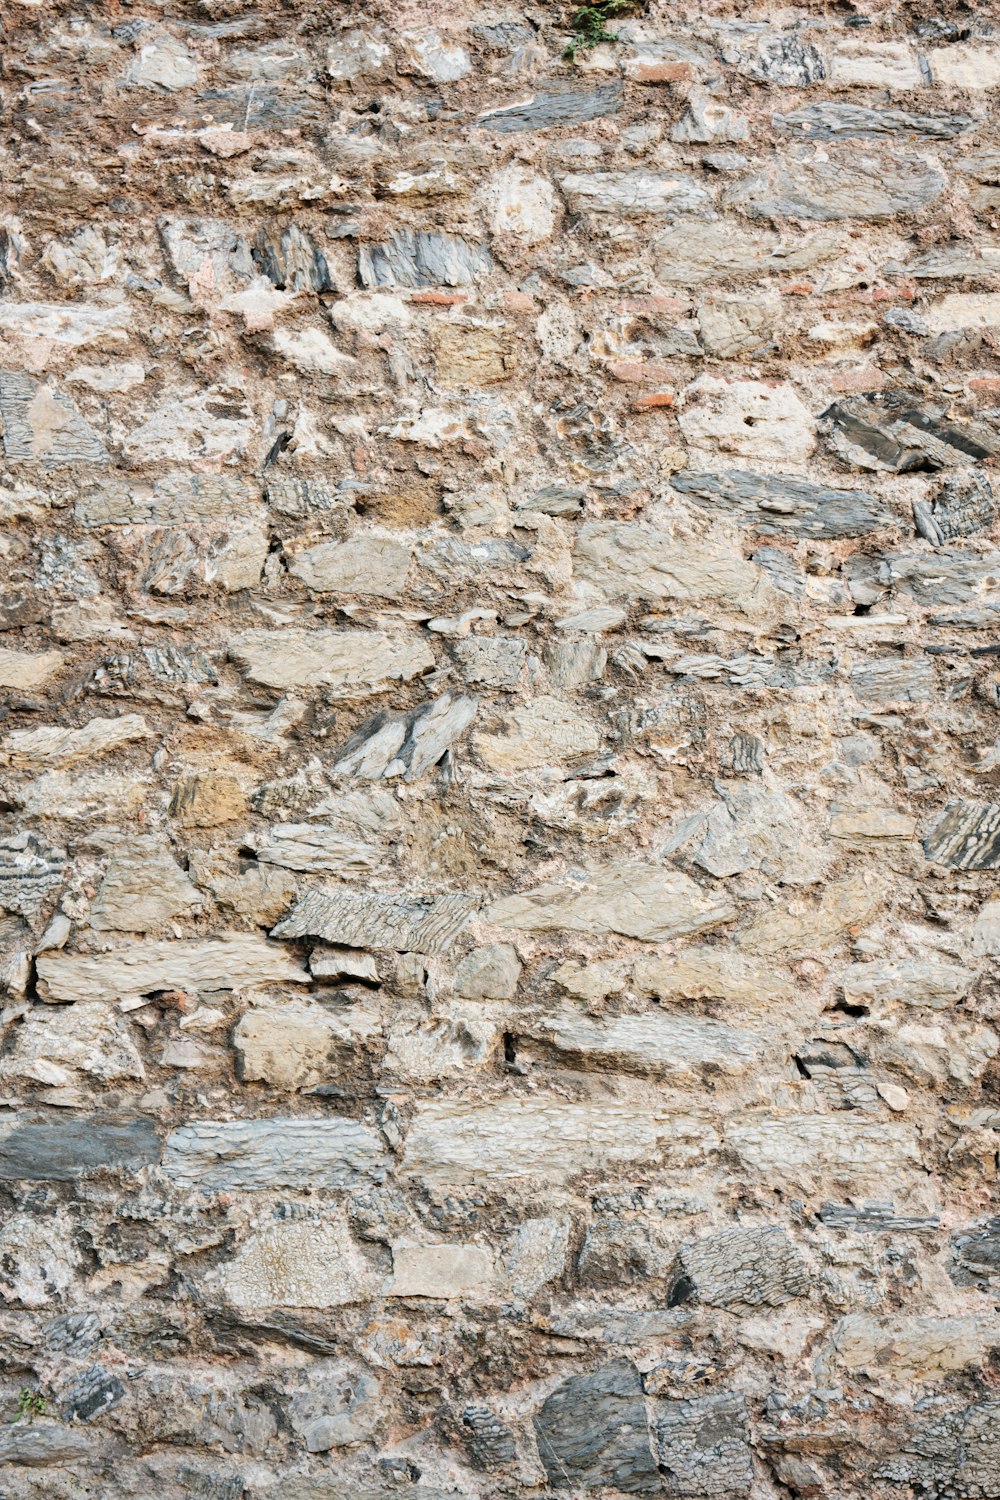 Ein Vogel sitzt auf einer Steinmauer